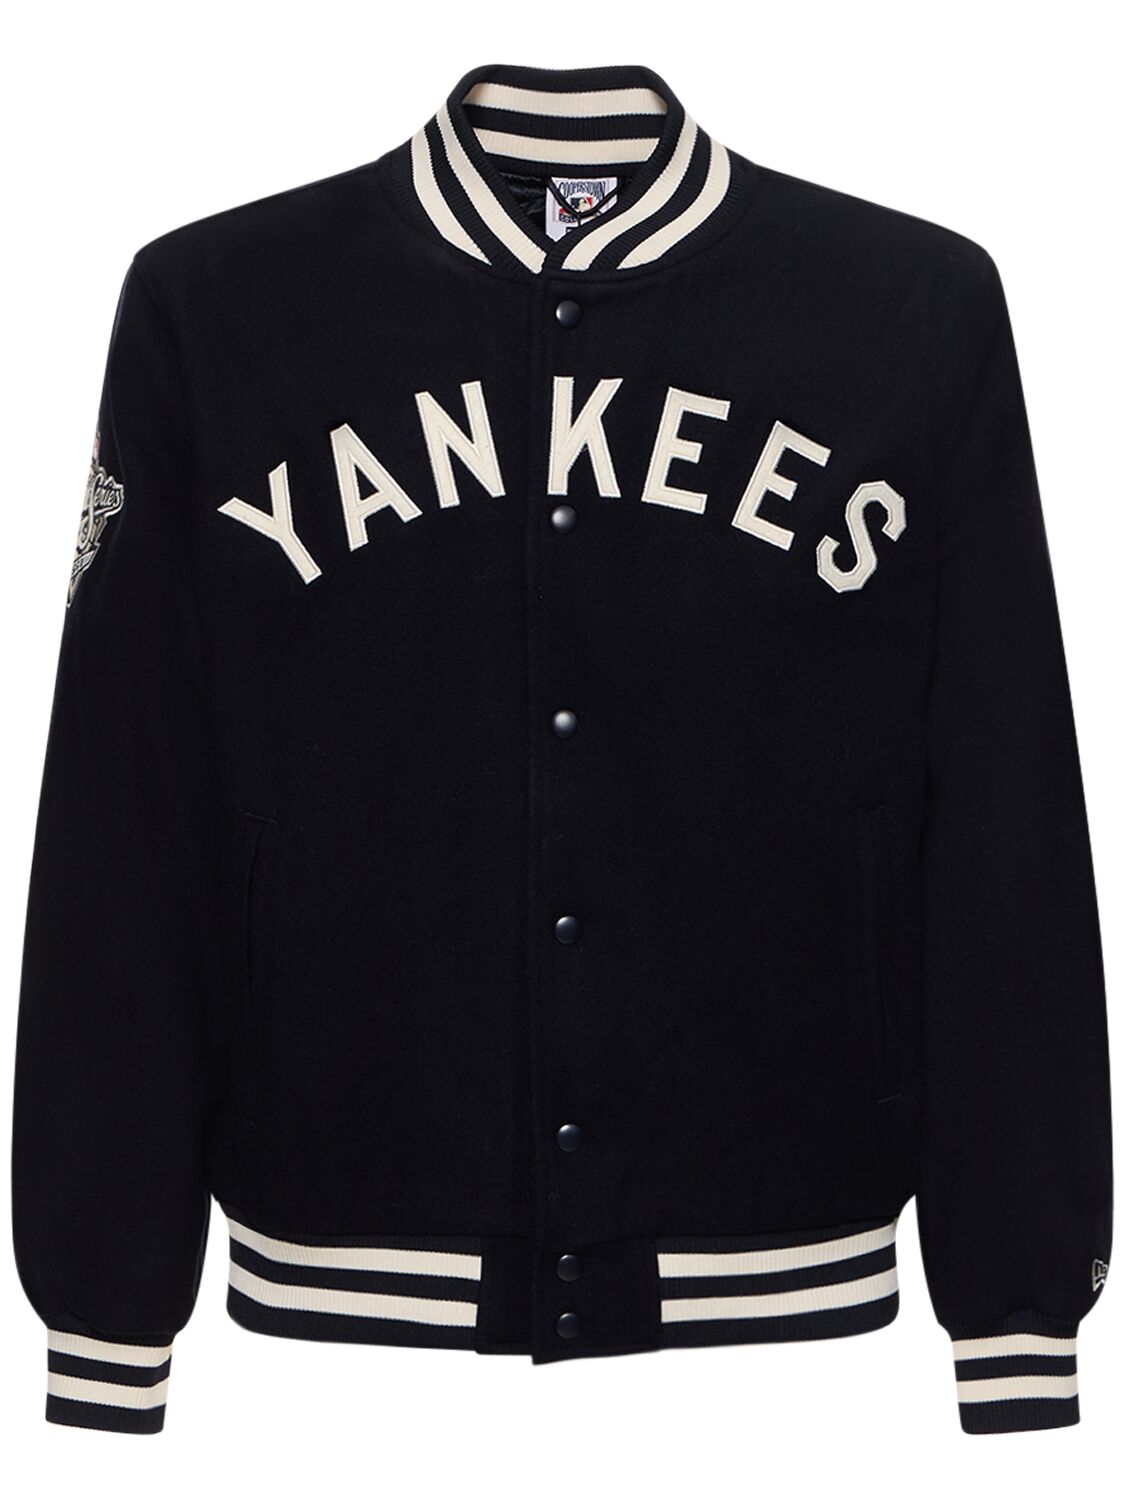 Ny Yankees Mlb Patch Varsity Jacket